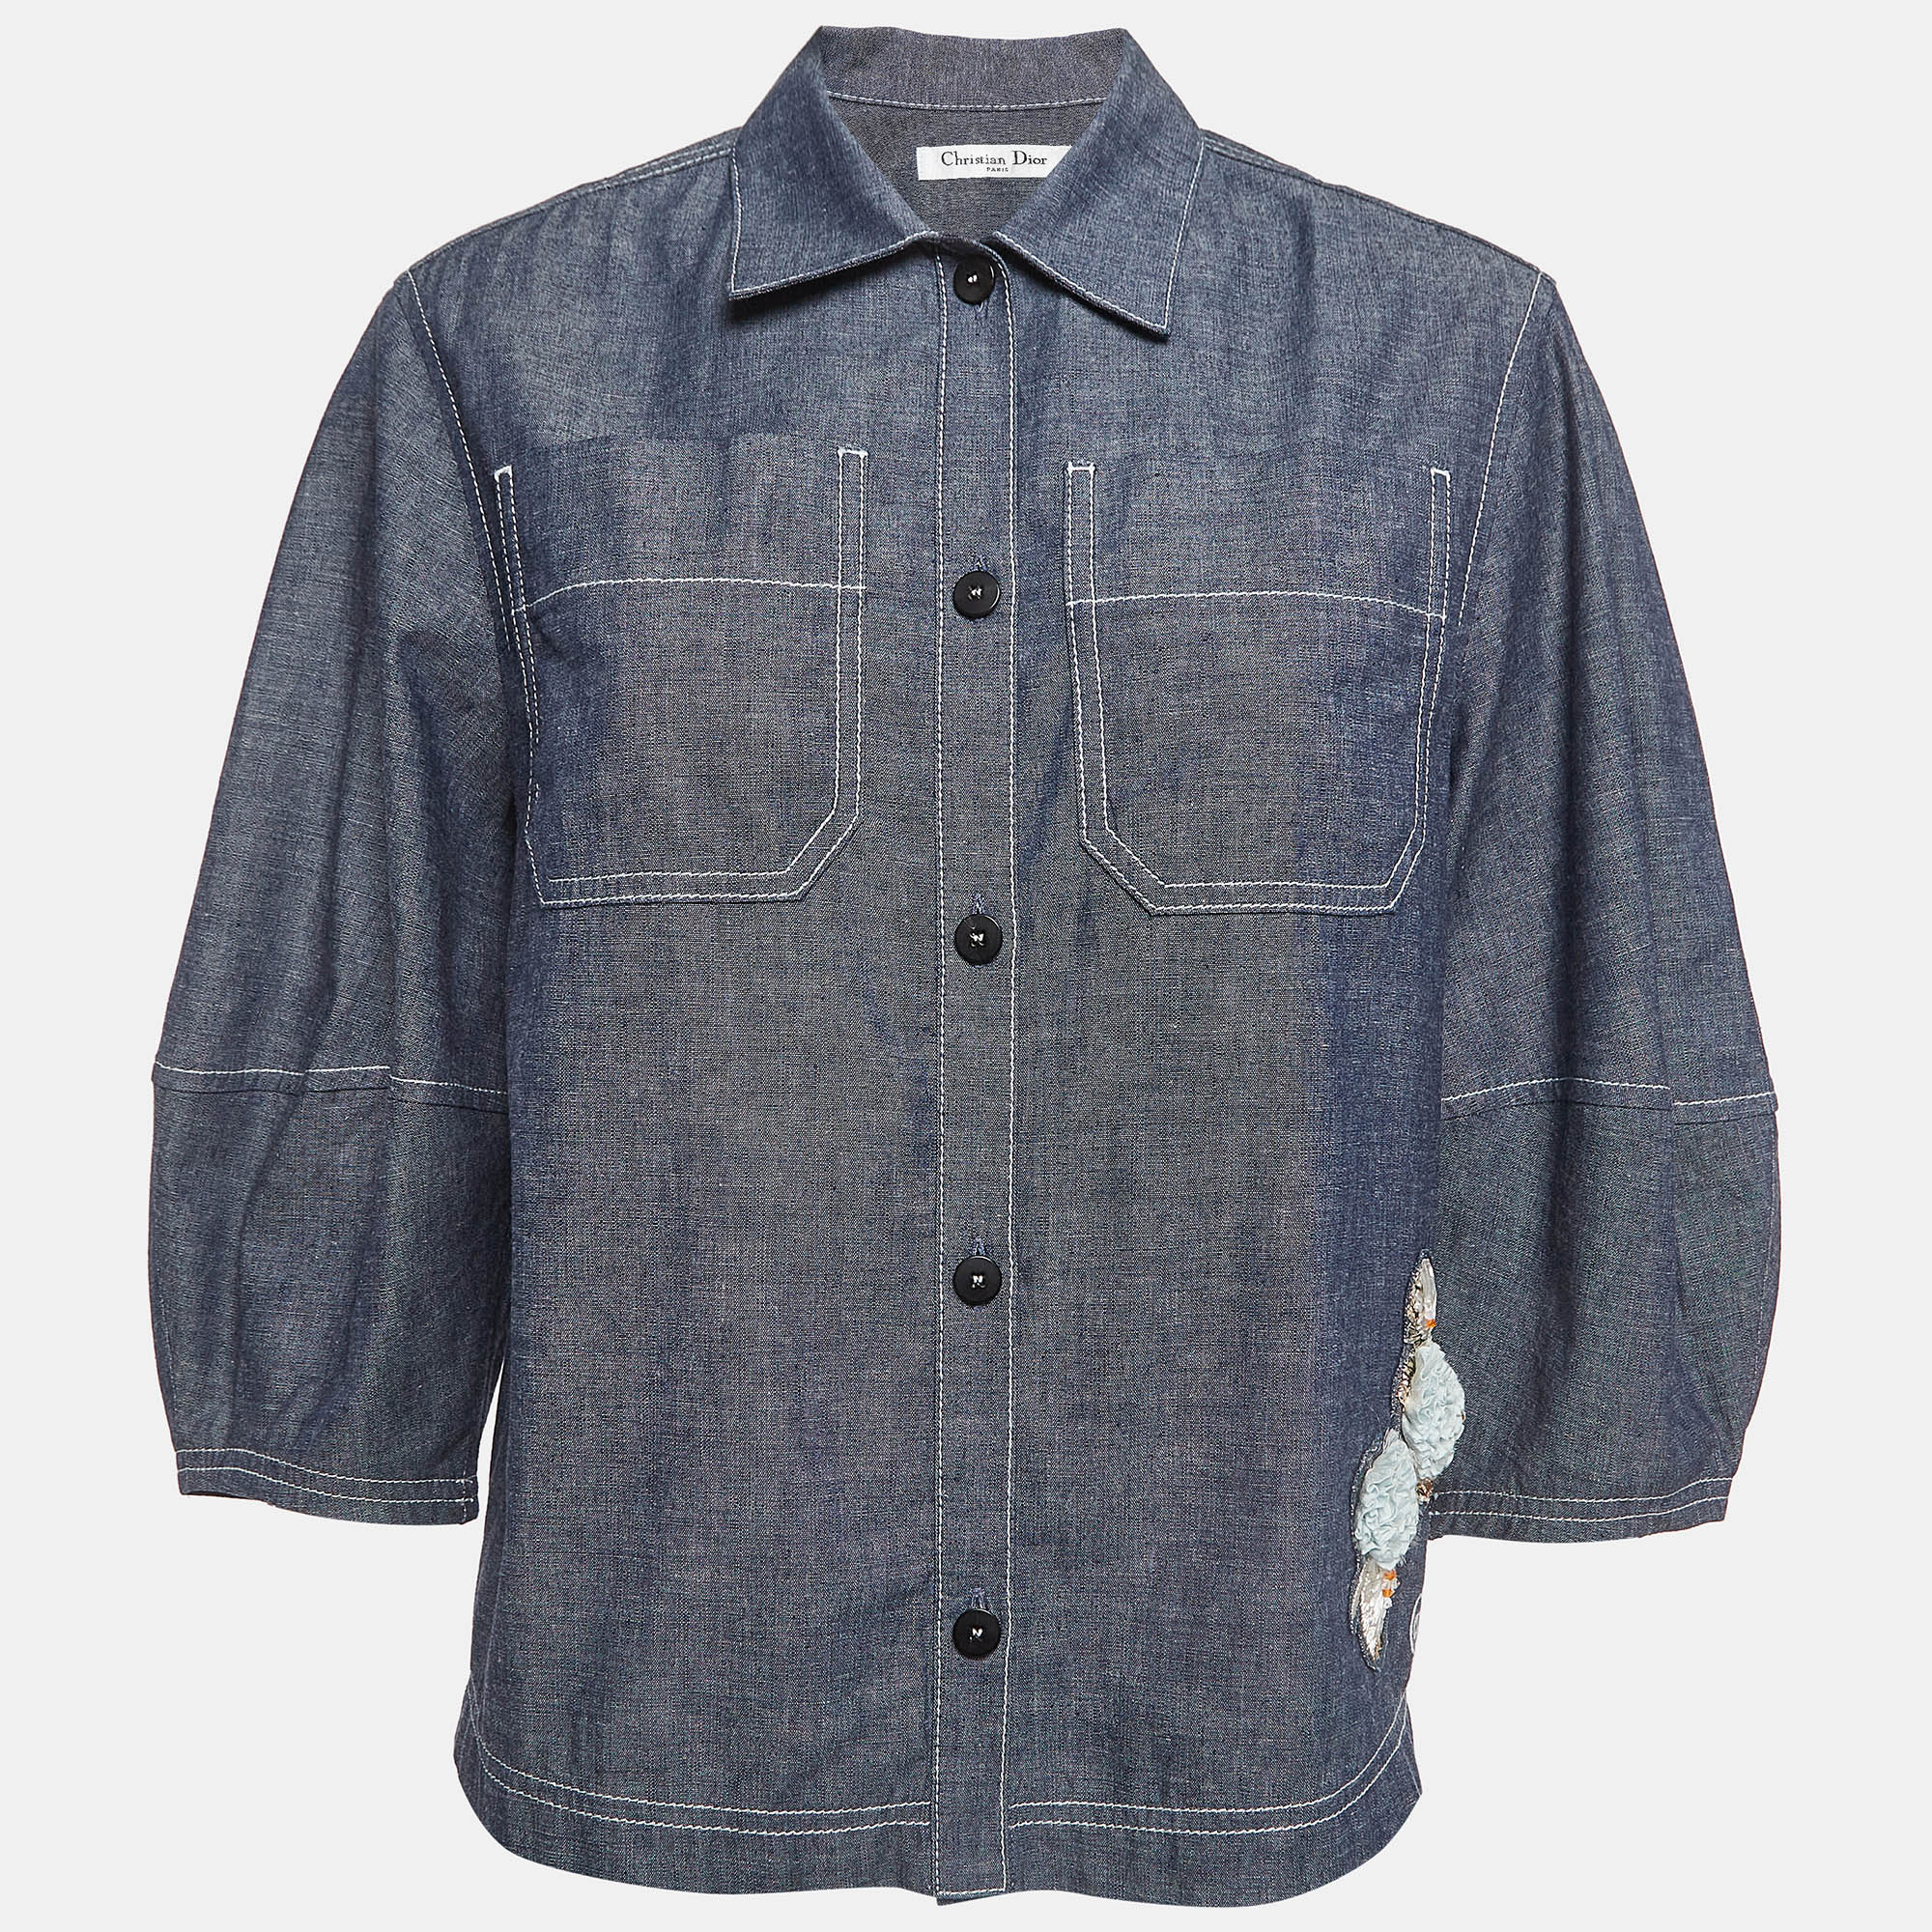 Christian dior blue cotton applique shirt l